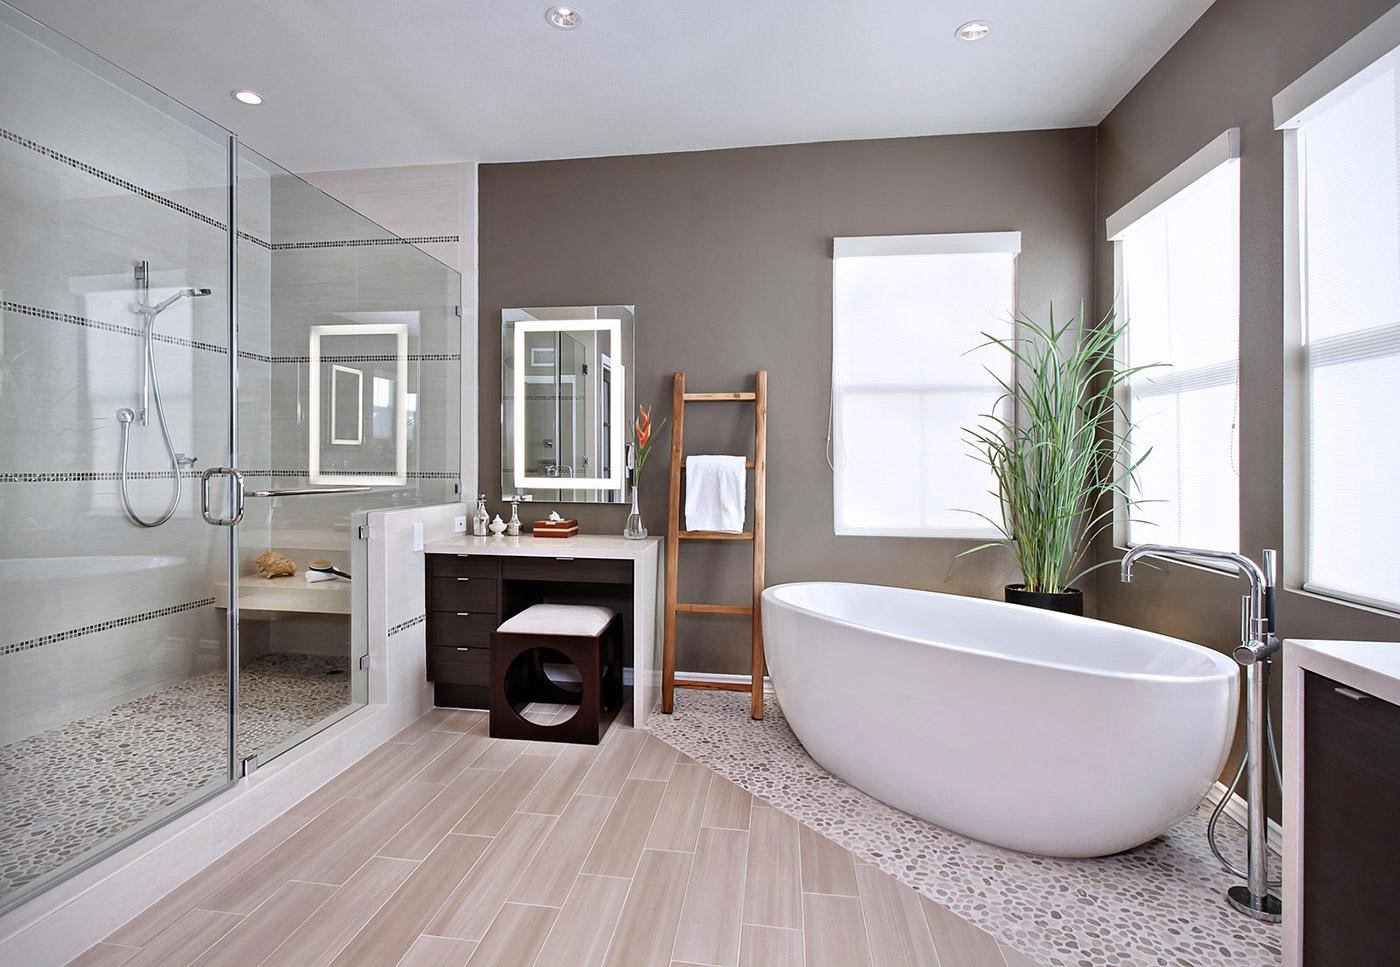 Thiết kế phòng tắm như thế nào để phù hợp với thẩm mỹ ngôi nhà?